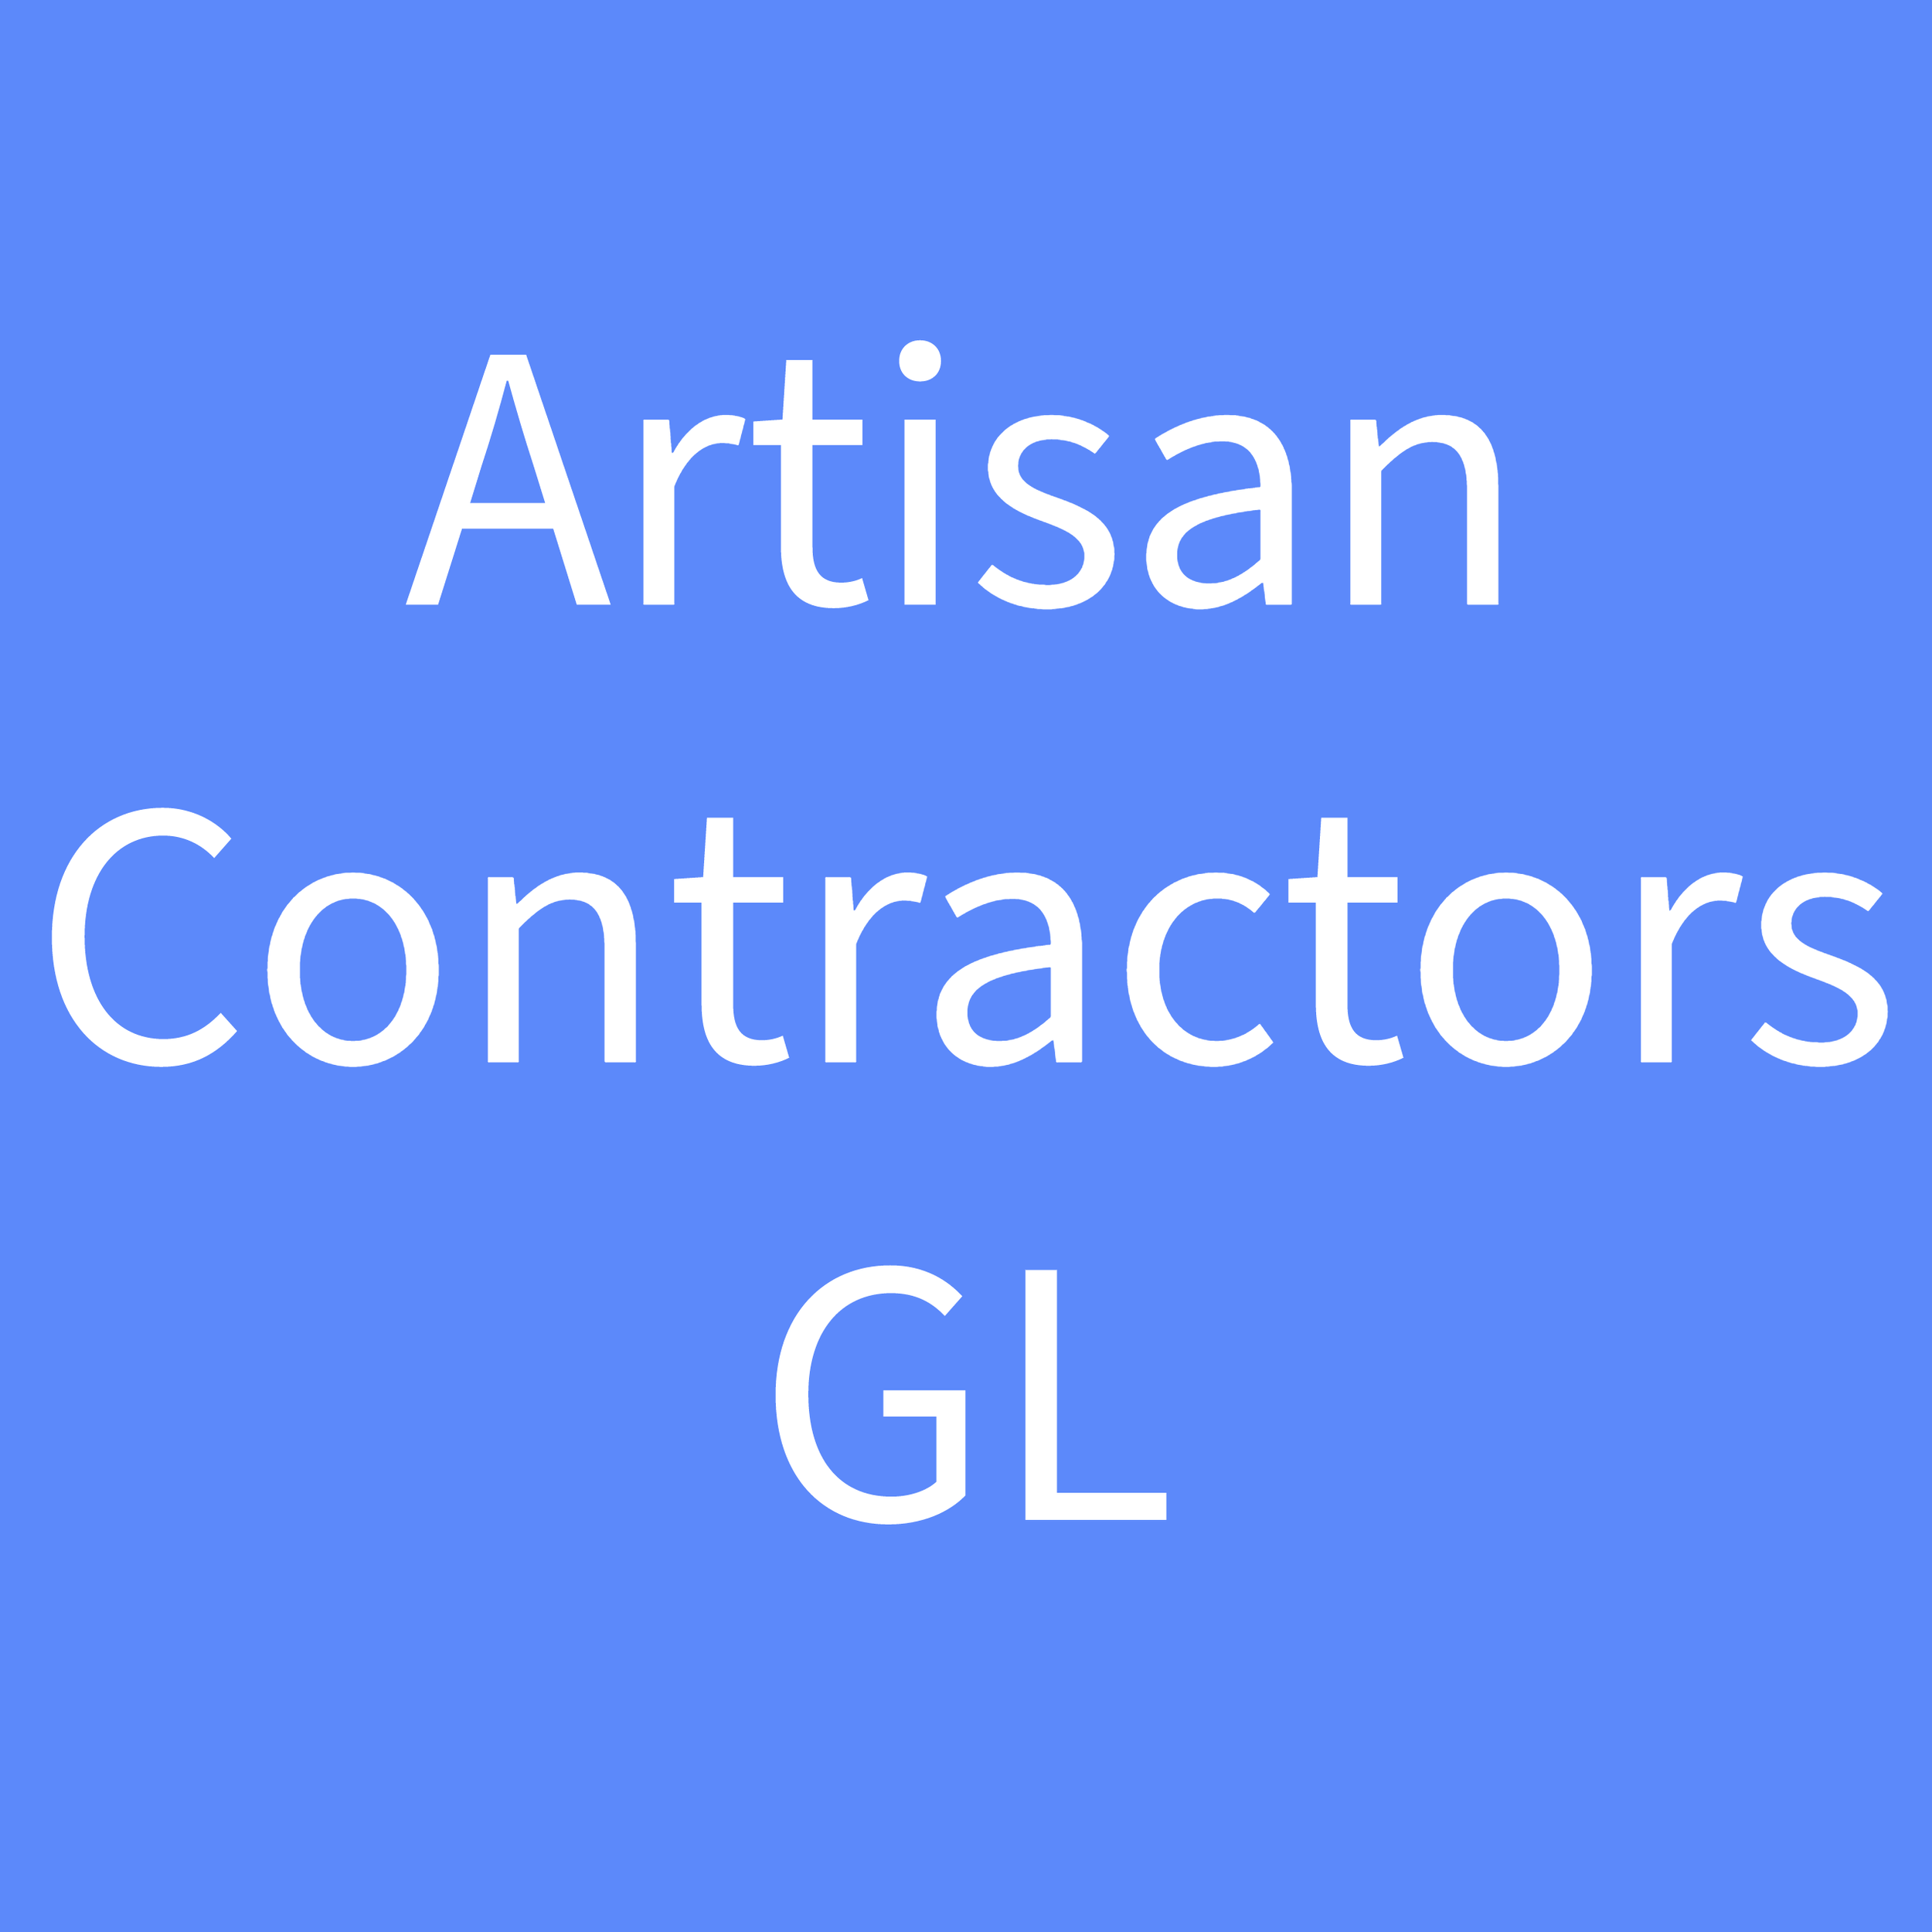 Artisan Contractors GL 